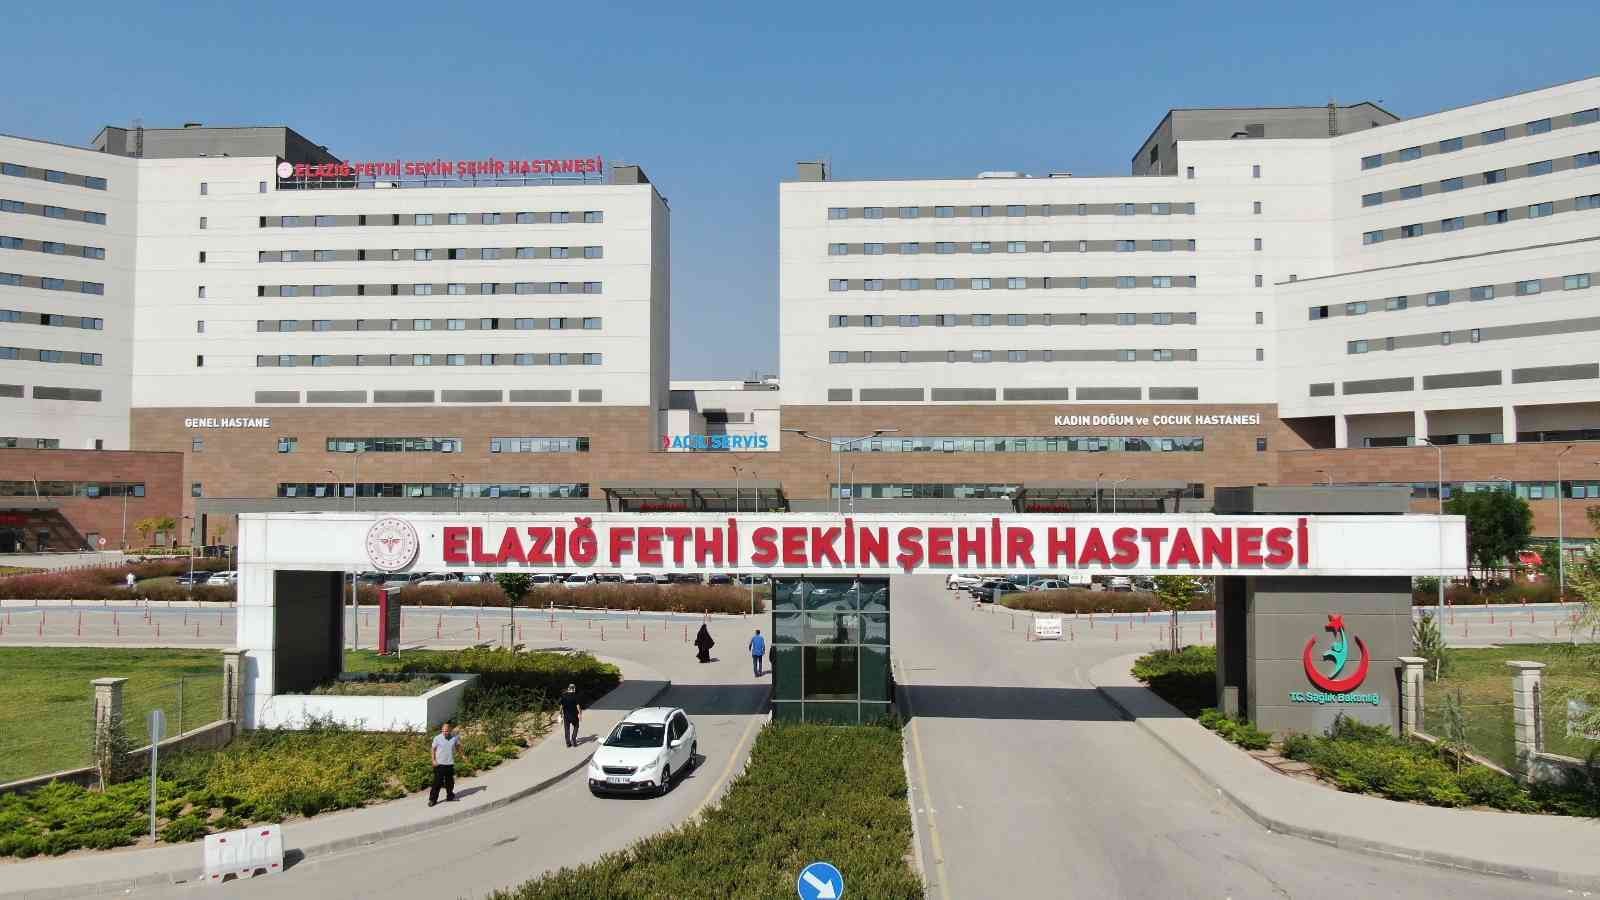 Bölgenin yükselen değeri Fethi Sekin Şehir Hastanesinde, bir yılda 1 milyon 566 bin 51 hasta tedavi edildi #elazig